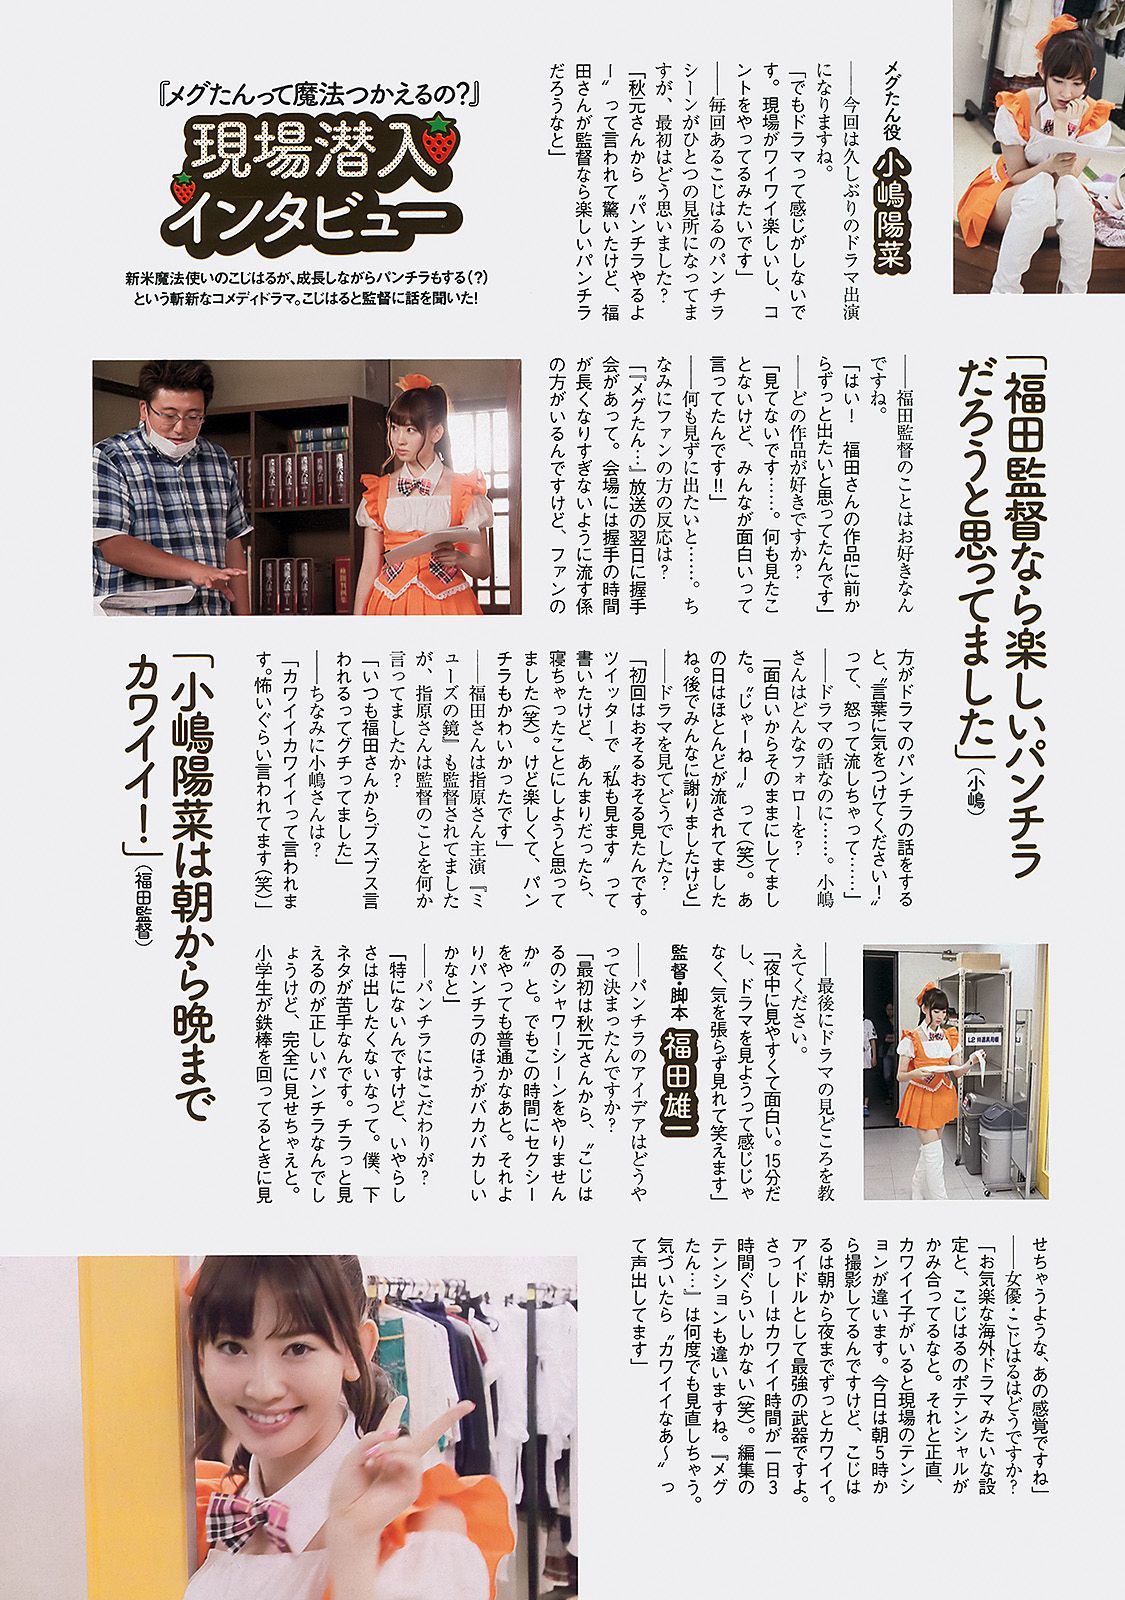 AKB48 Atsuko Maeda Riria Riria Sayaka Okada [Wöchentlicher Playboy] 2012 Nr. 36 Foto Seite 66 No.9e556a